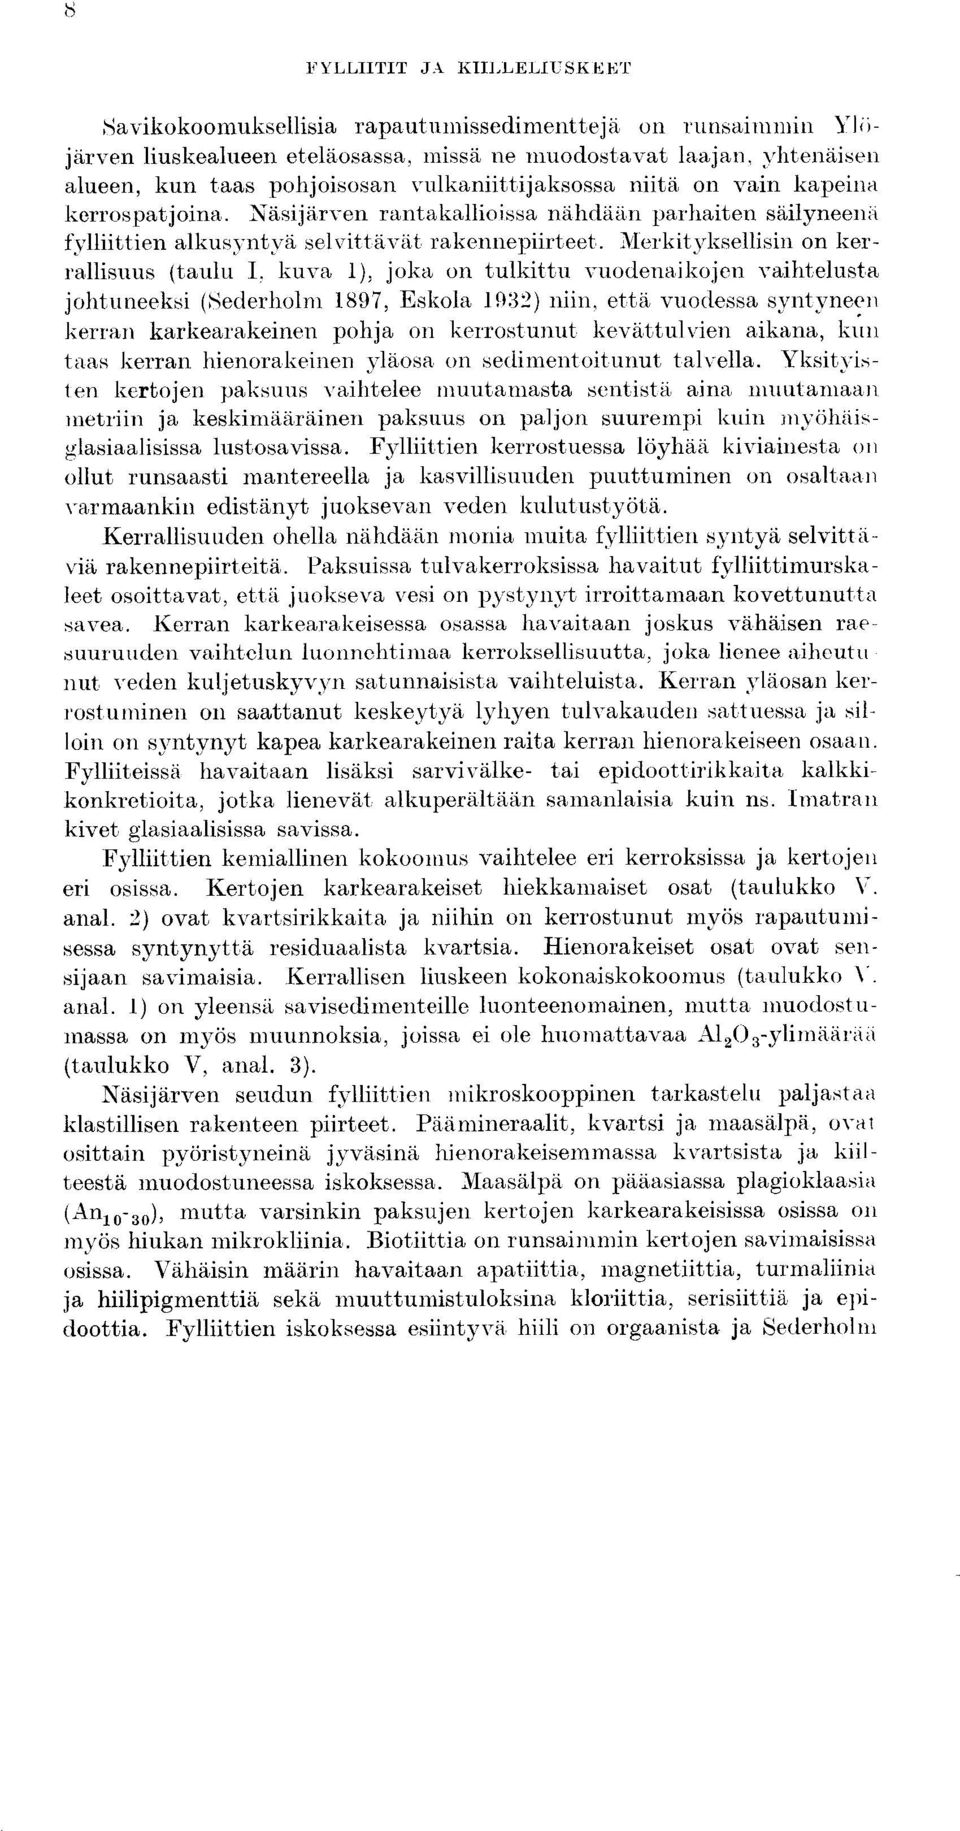 llerkityksellisin on kerrallisuus (taulu I, kuva 1), joka on tulkittu vuodenaikojen vaihtelusta johtuneeksi (Sederholm 1897, Eskola 193`?